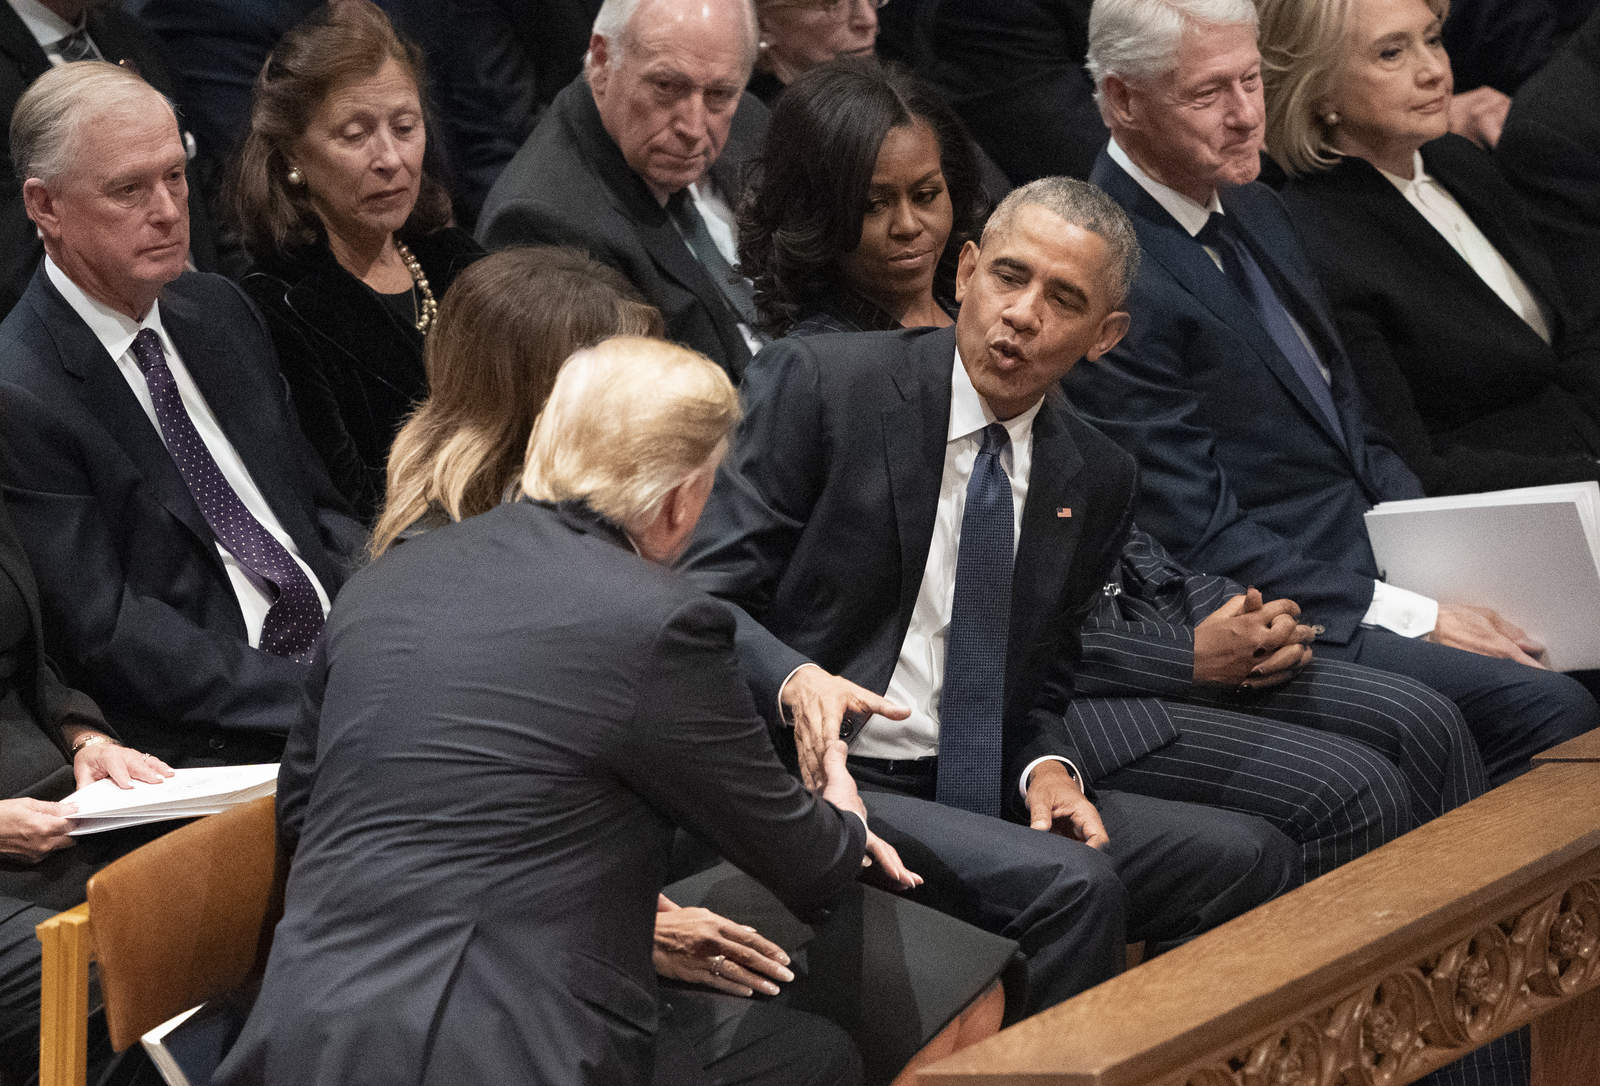 El saludo entre Trump y Obama fue la primera interacción conocida entre ambos desde el traspaso de poder el 20 de enero de 2017, hace casi dos años. (AP) 

